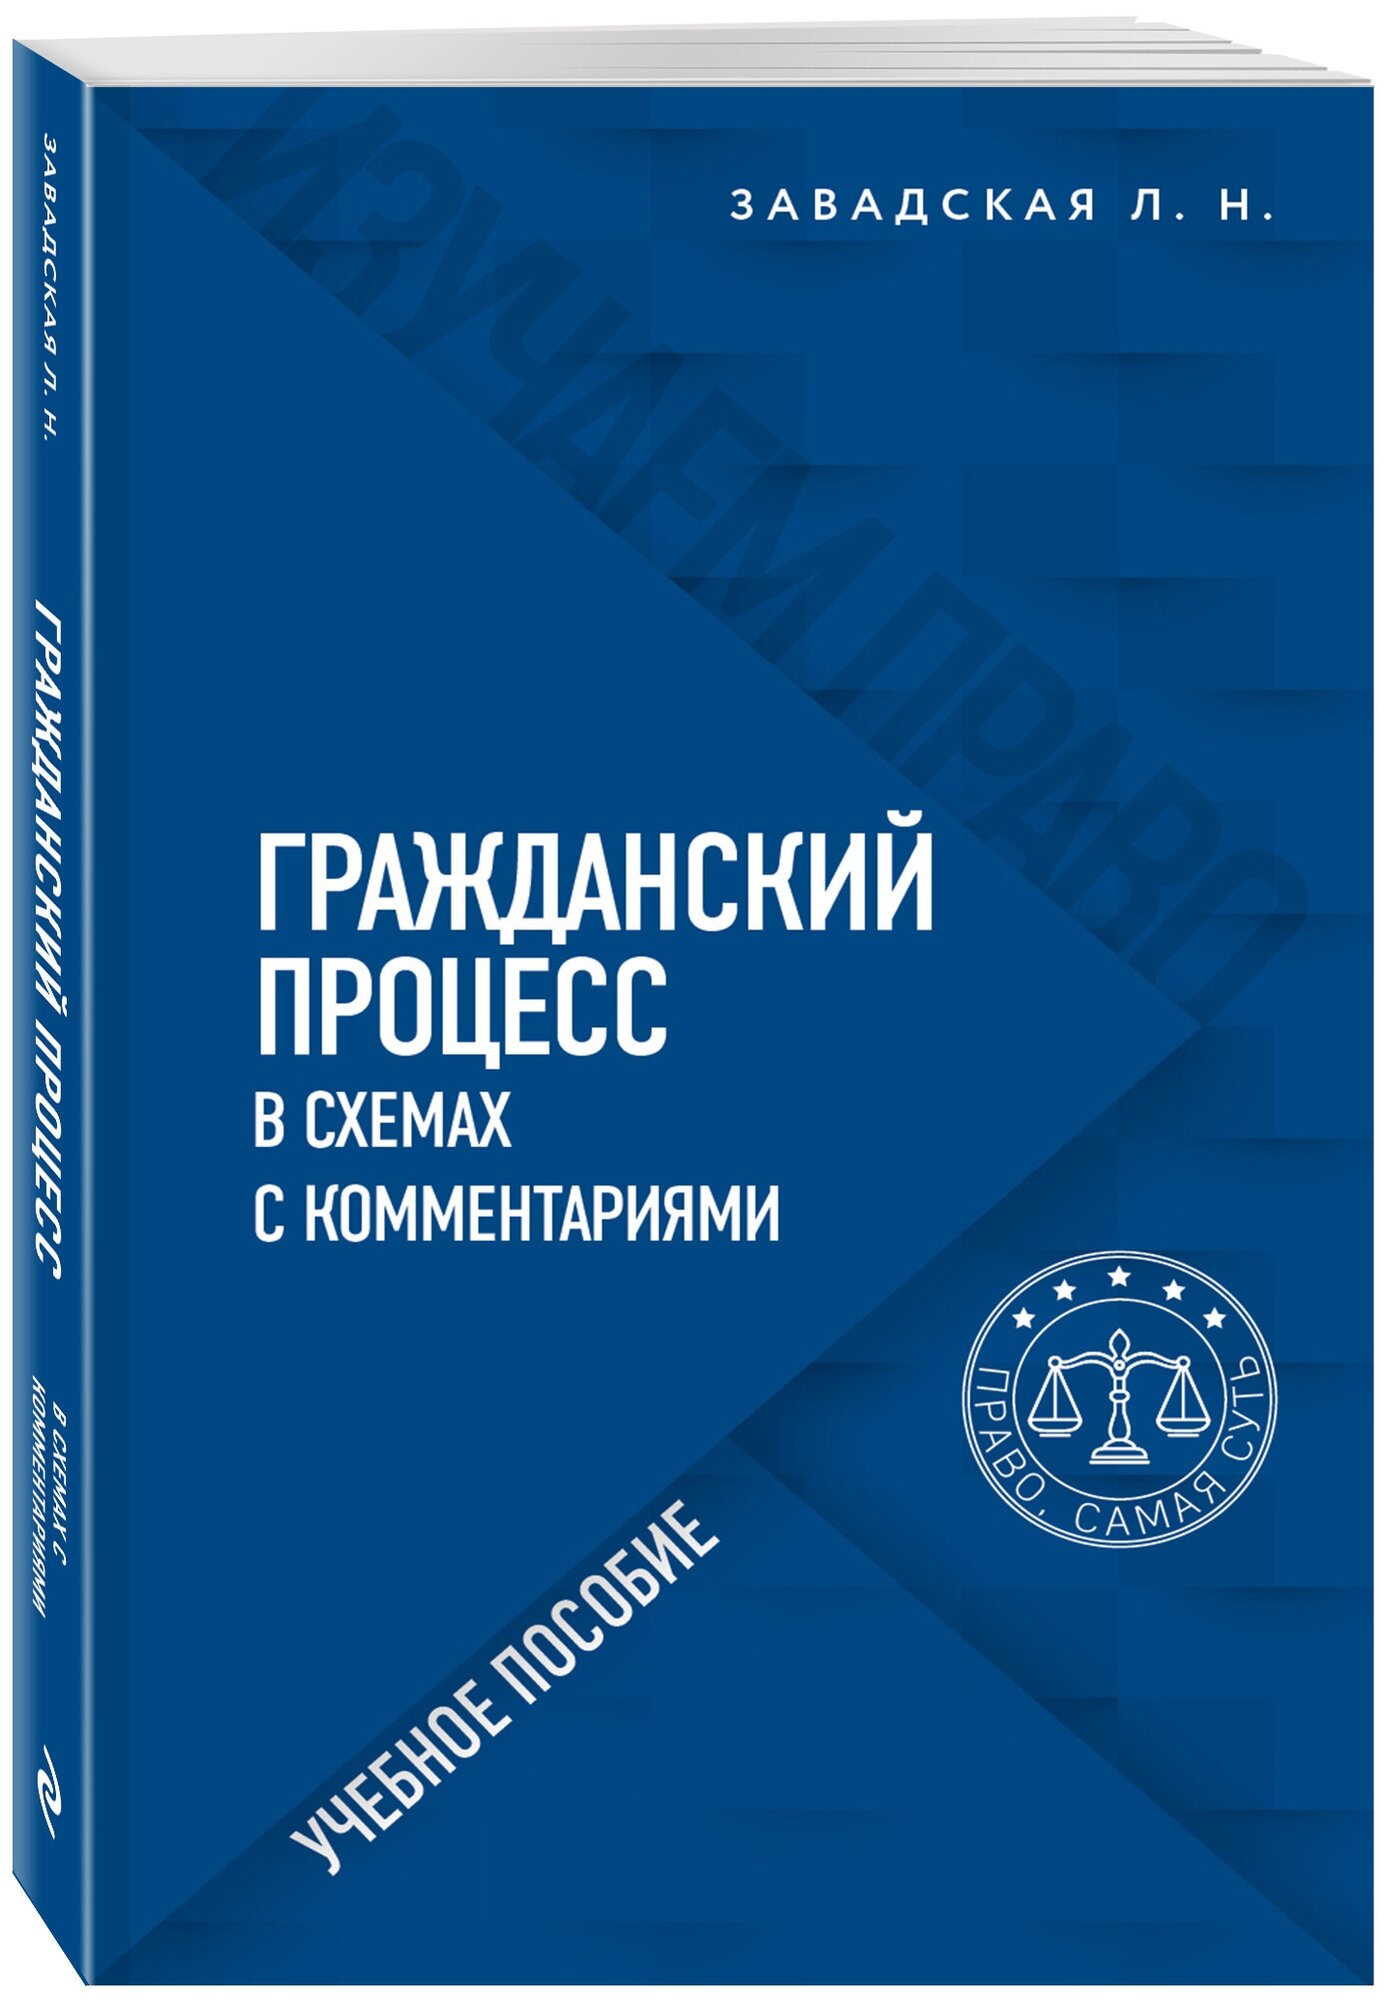 Завадская Л. Н. Гражданский процесс в схемах с комментариями. 6-е издание. Переработанное и дополненное